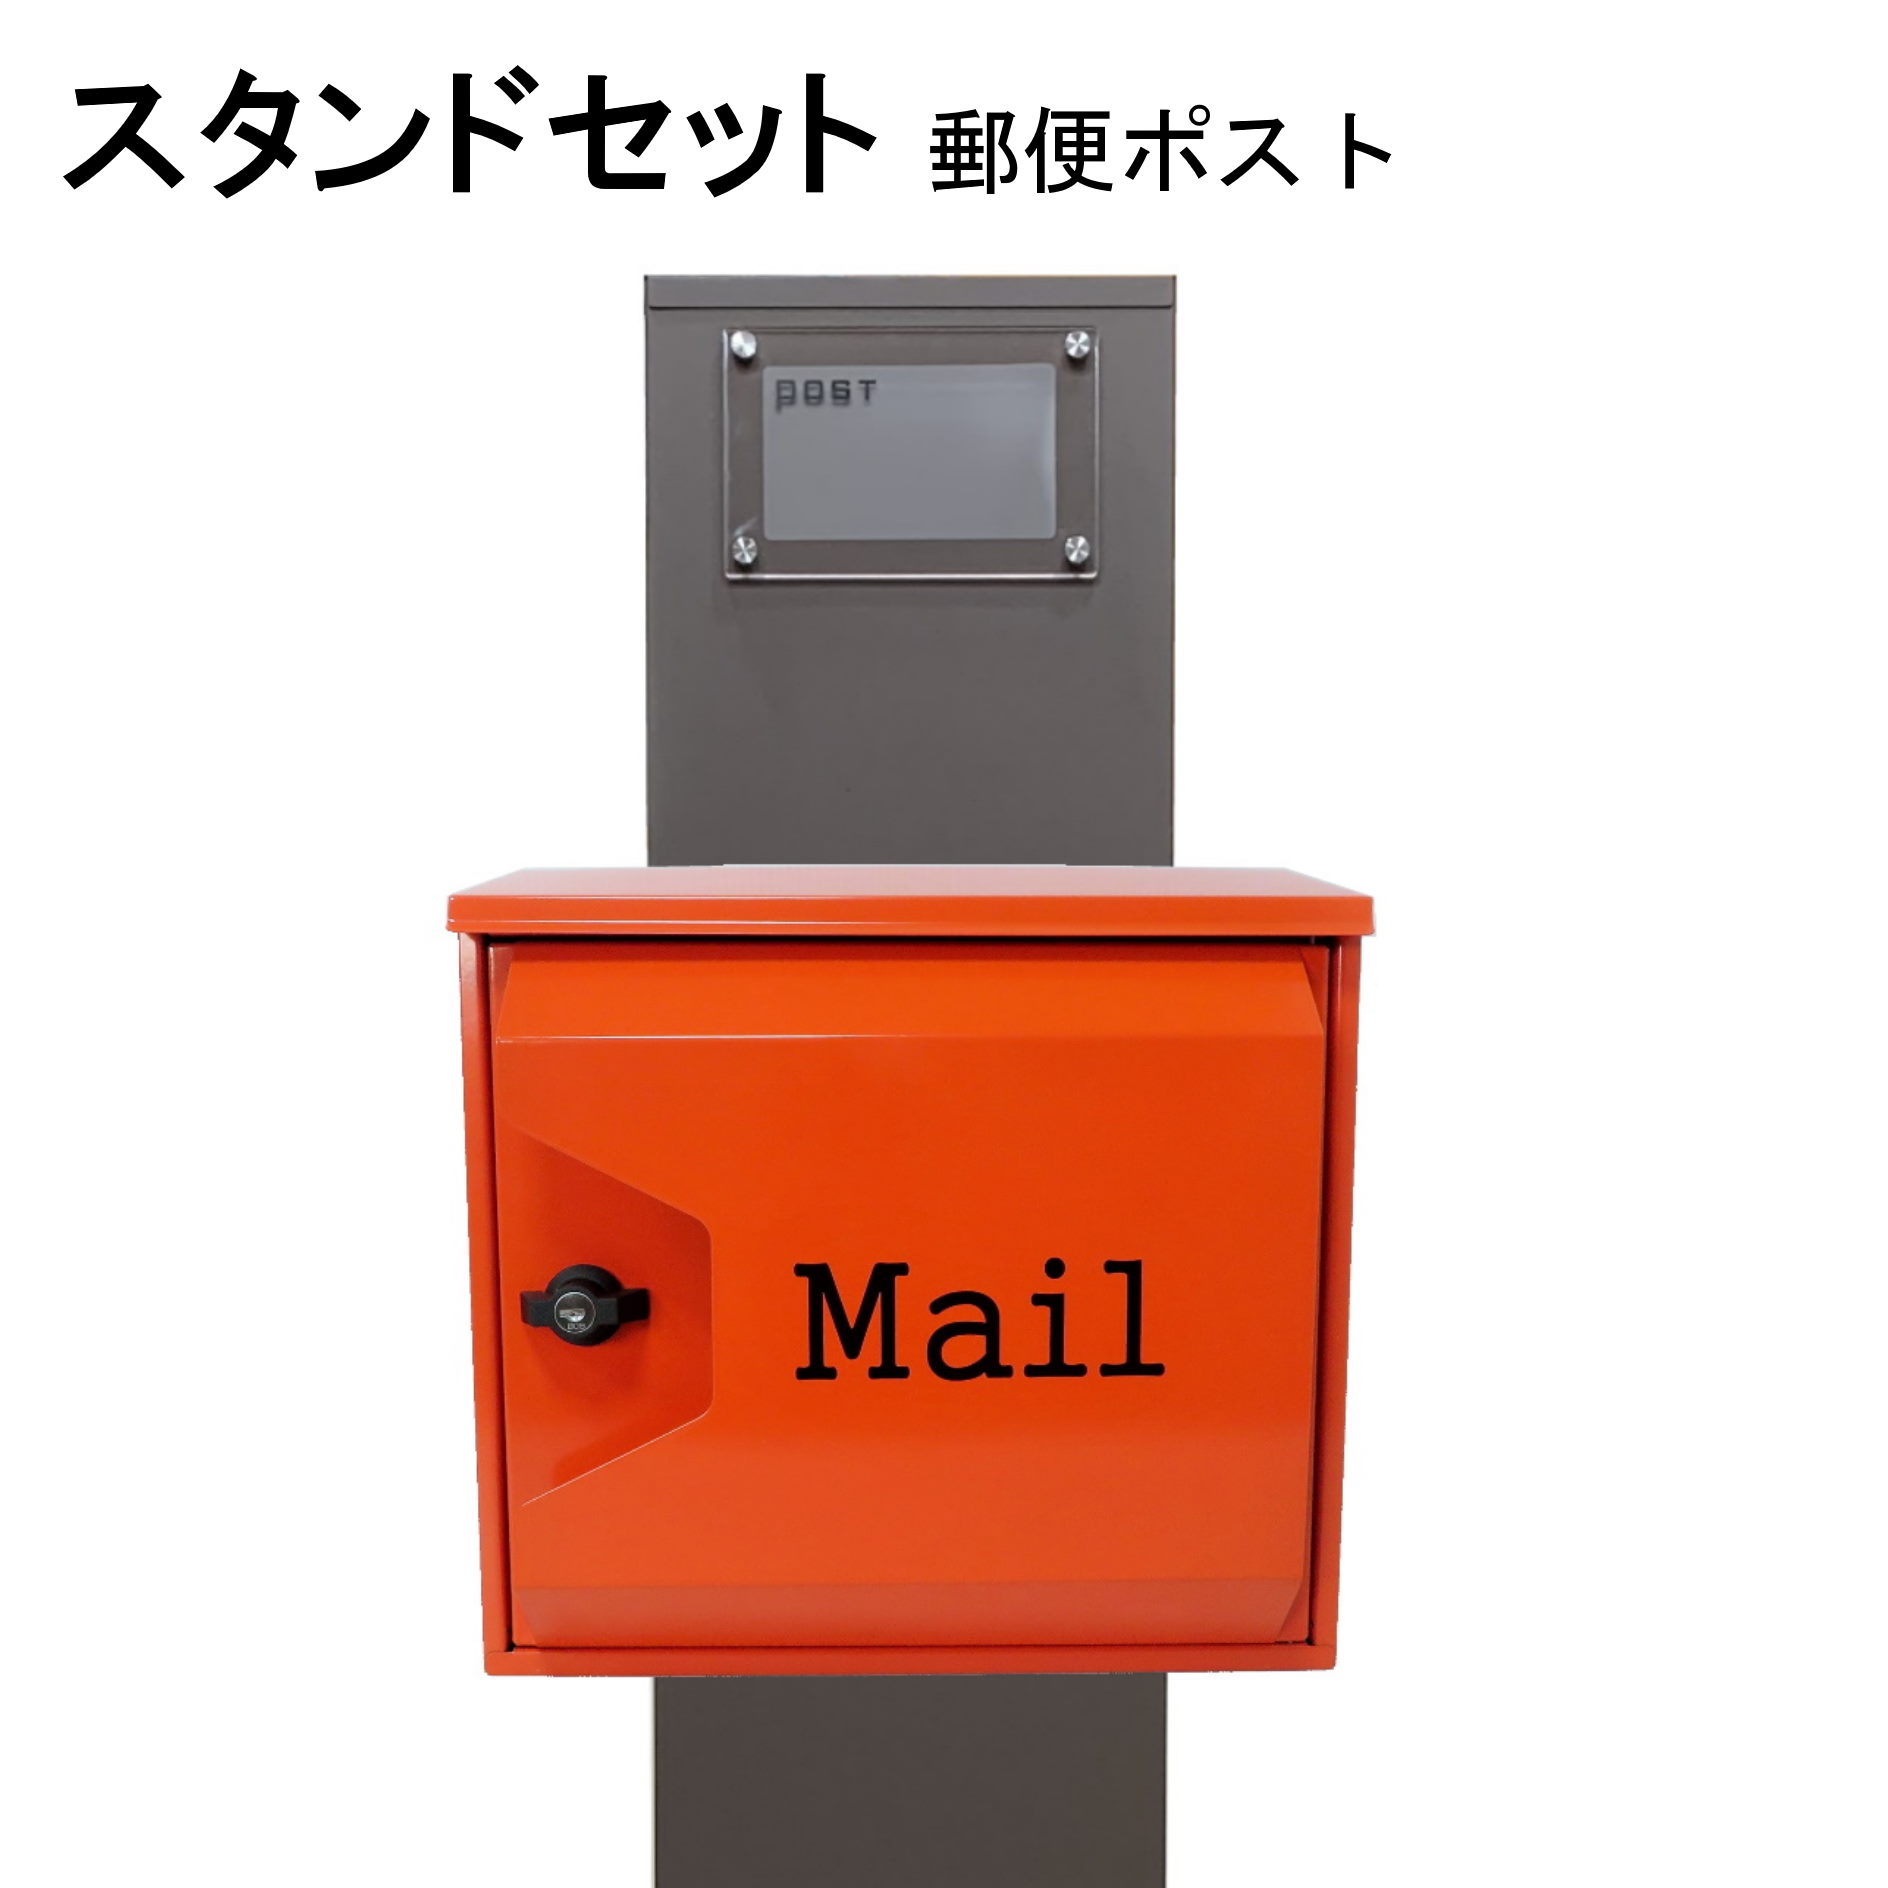 ポスト 郵便受け 郵便ポスト スタンド オレンジ色ポストpm271s-pm044(訳あり)